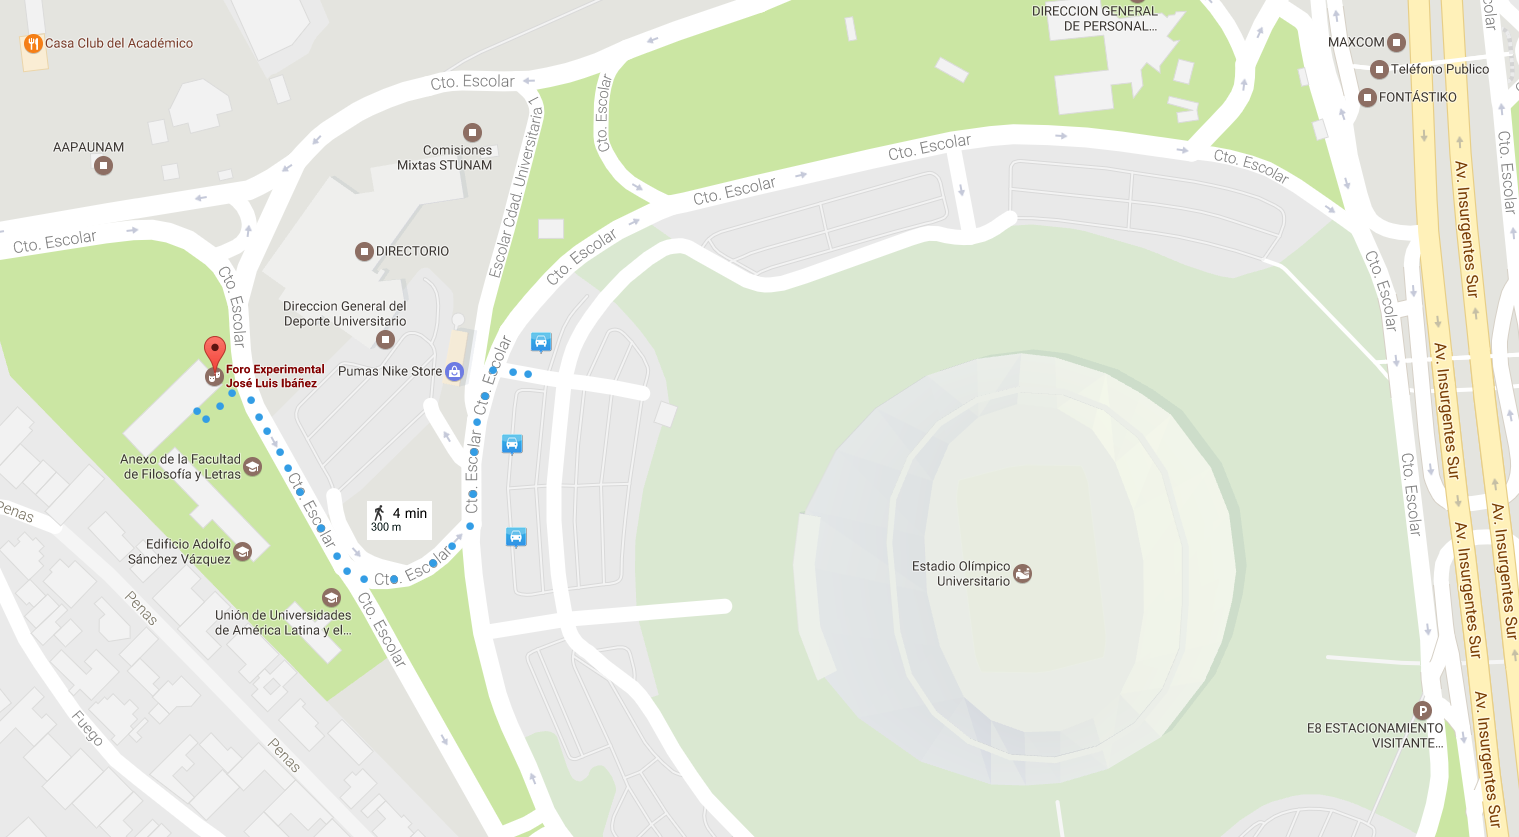 croquis del estacionamiento 3 del estadio olímpico al foro experimental 'José Luis Ibáñez'